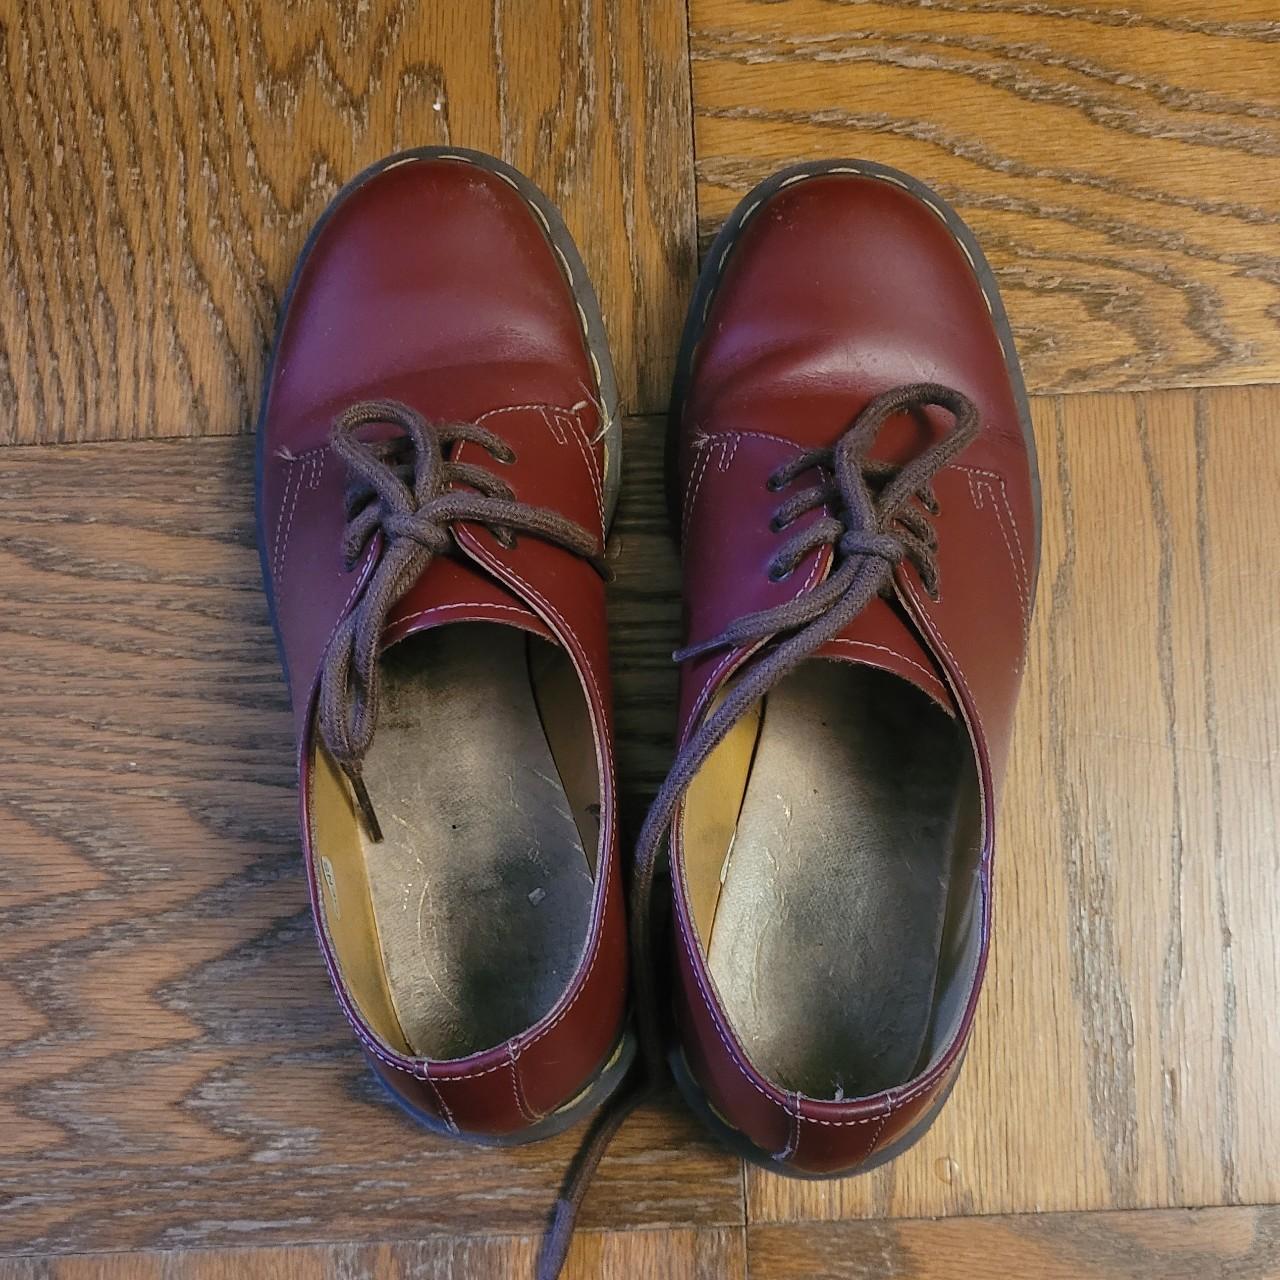 Dr. Martens Men's Red and Burgundy Footwear (5)